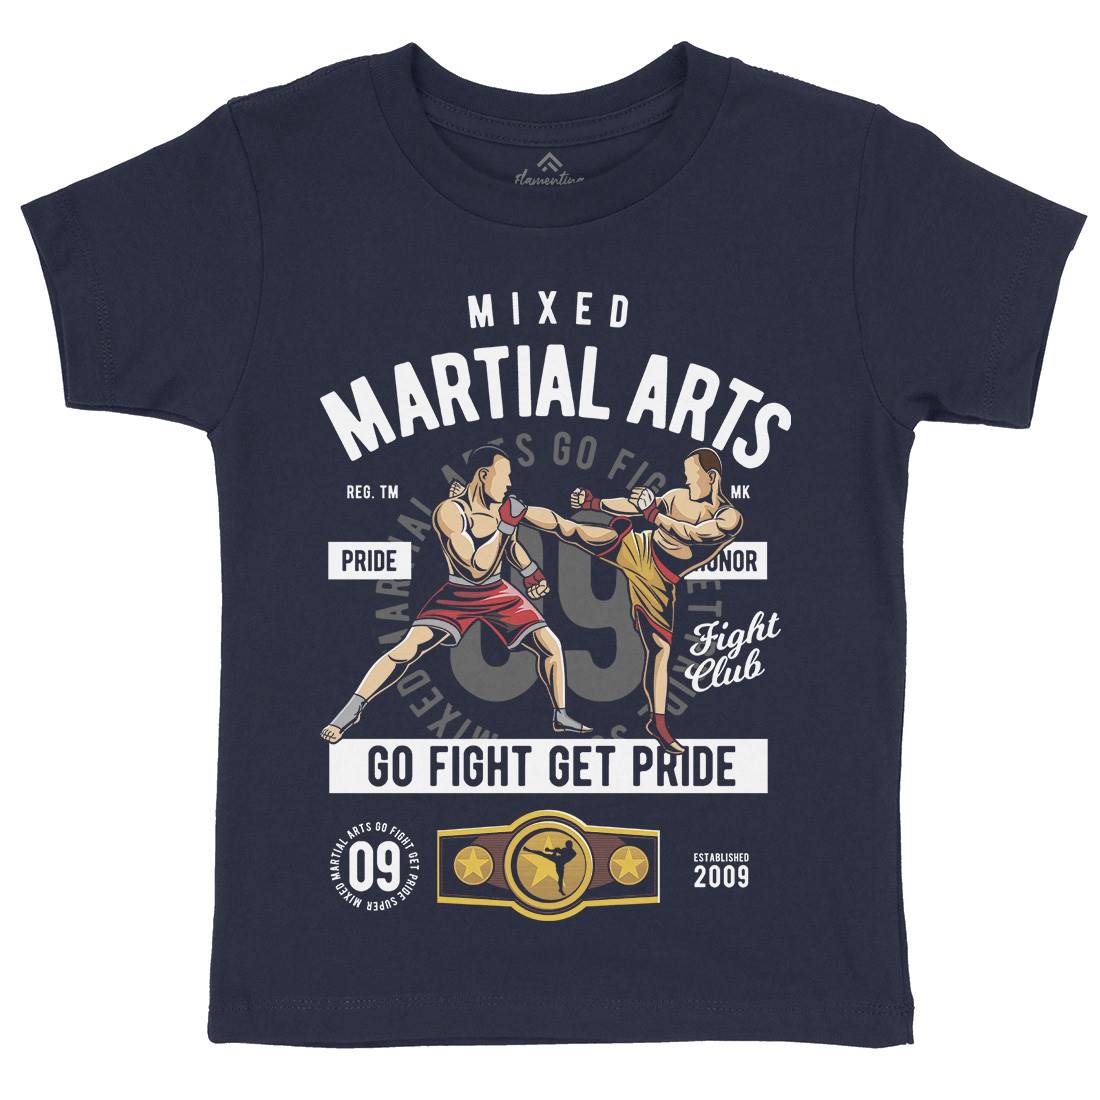 Mixed Martial Arts Kids Crew Neck T-Shirt Sport C396